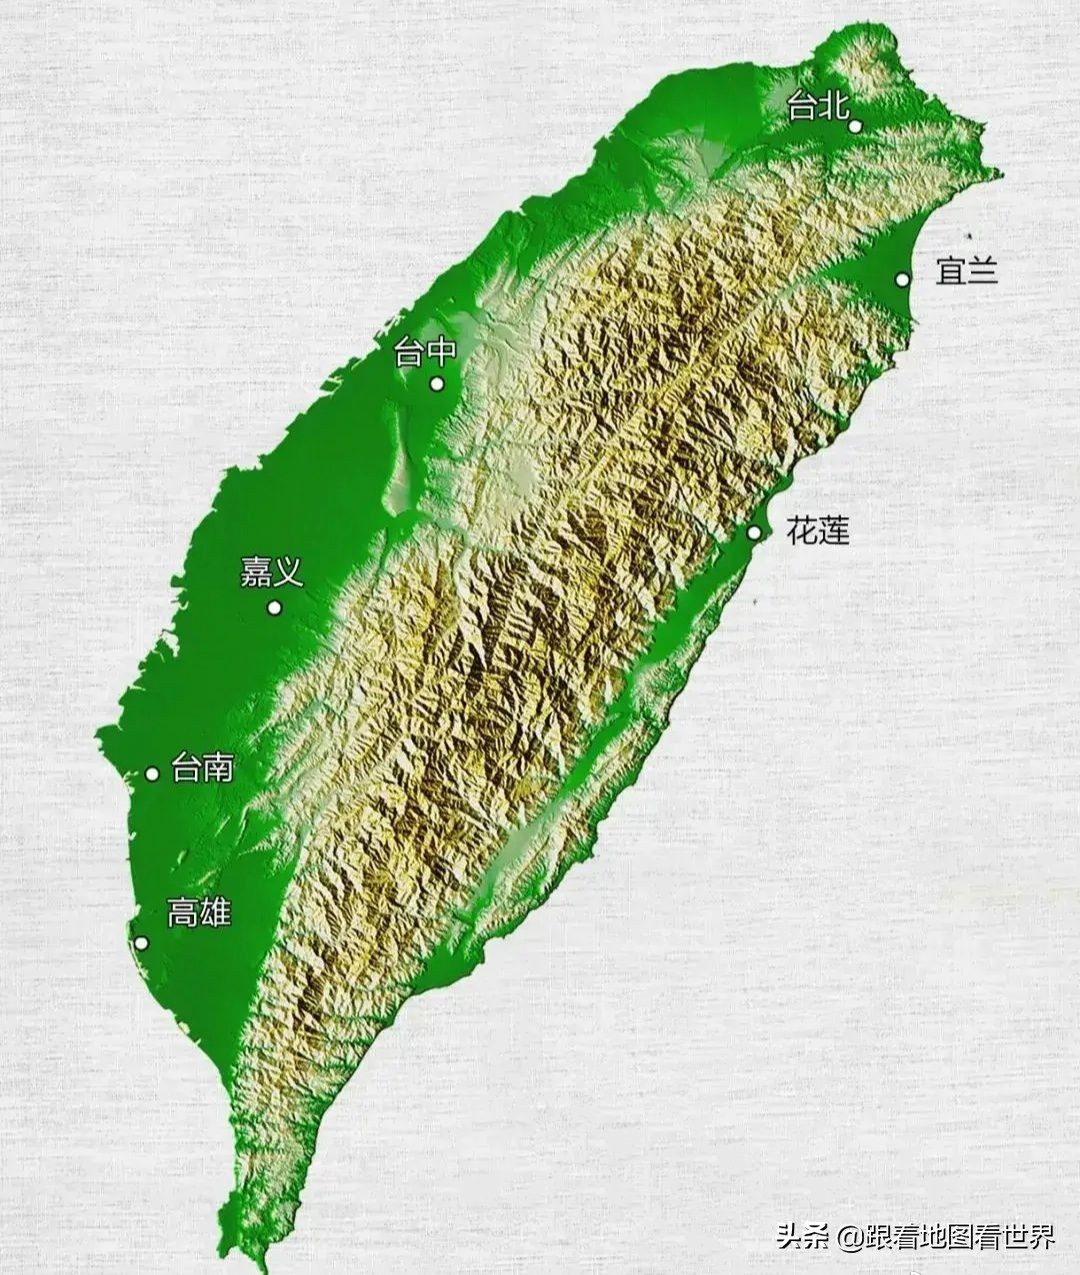 台湾海峡地图,